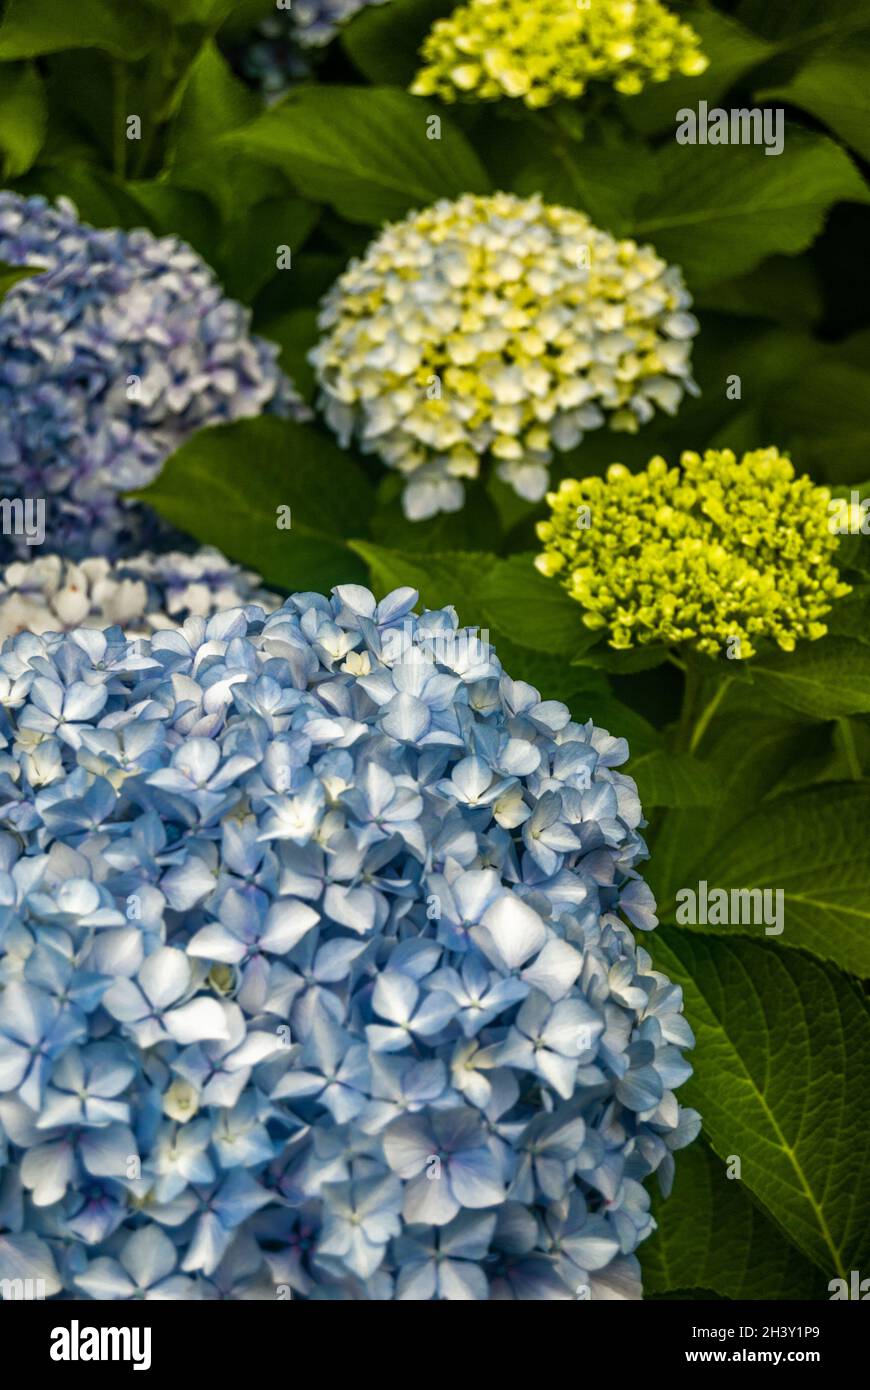 Selektive Fokussierung auf einen Busch aus blauen und weißen Hortensien, Nahaufnahme großer Hortensien-Knospen im Garten, Kombination aus blauen und grünen Farben Stockfoto